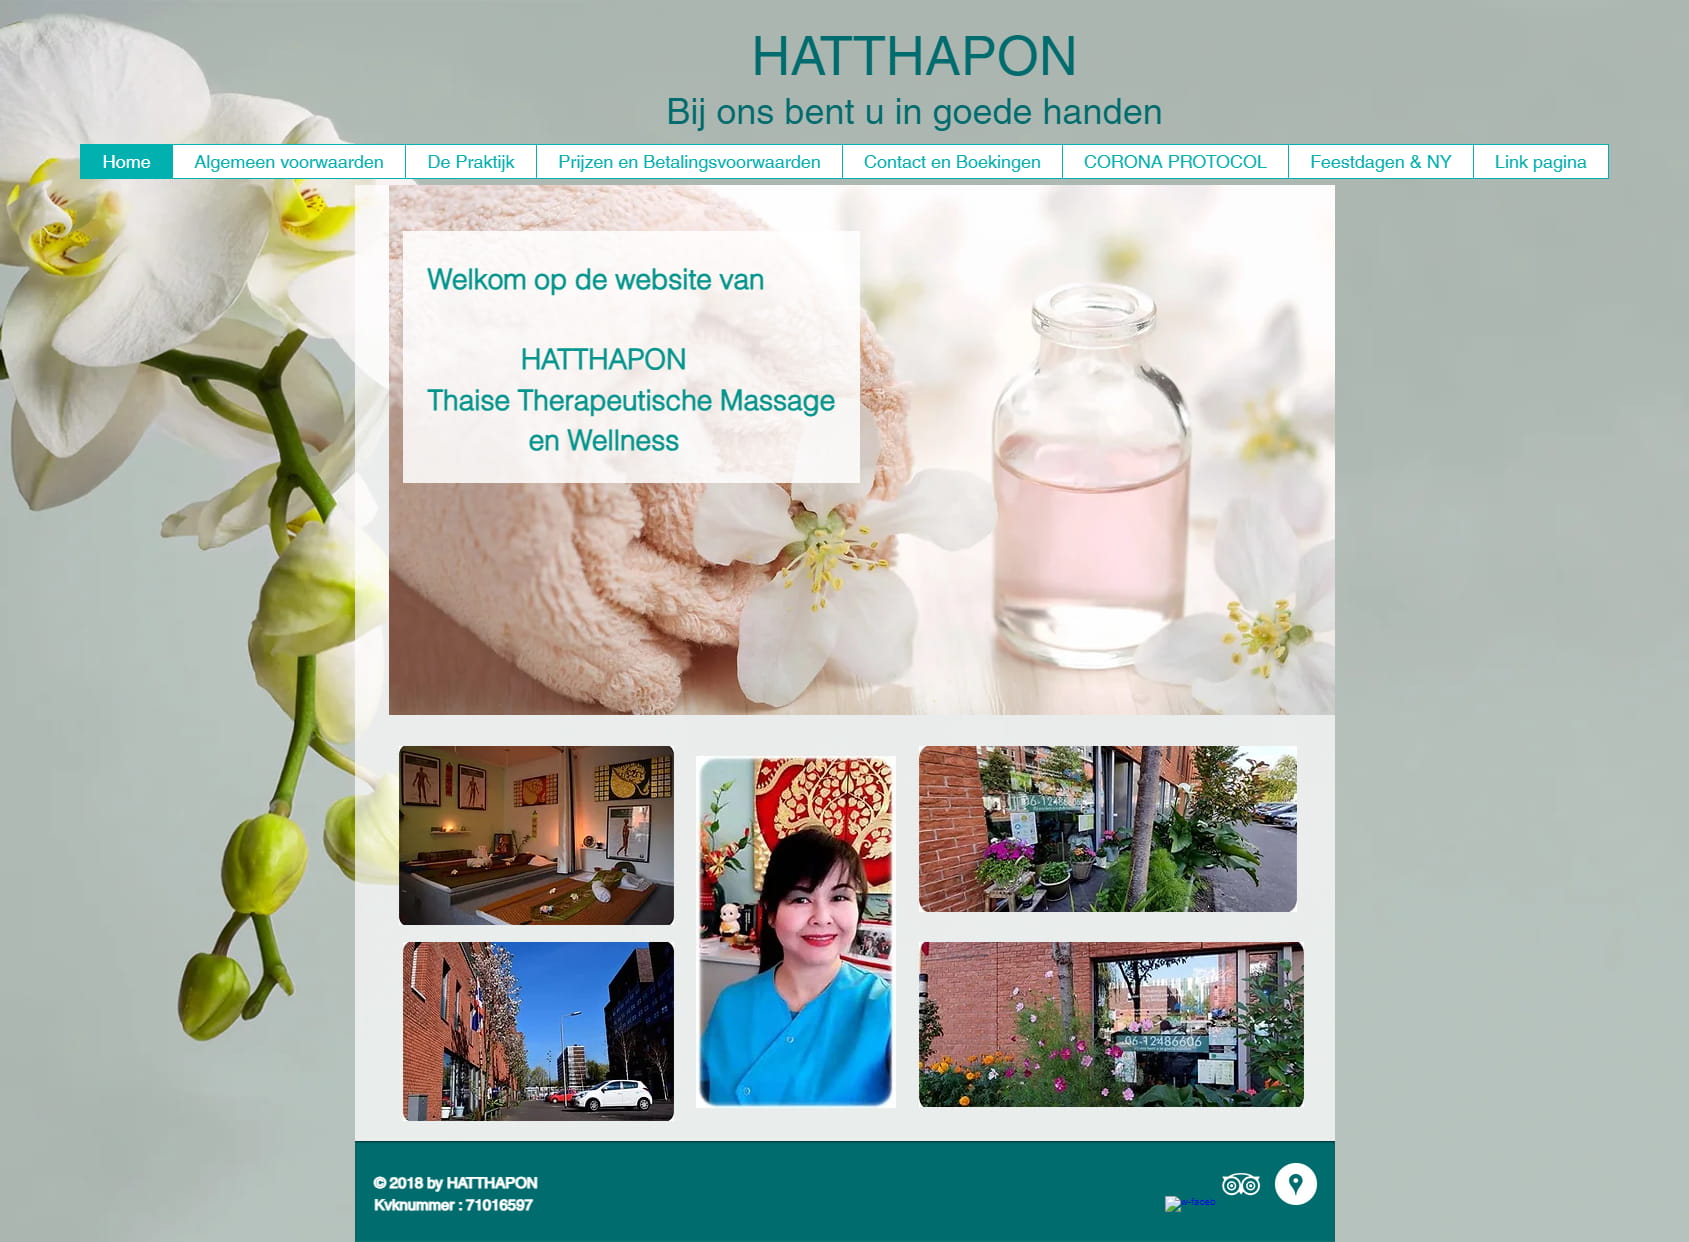 Hatthapon Thai massage in Delft